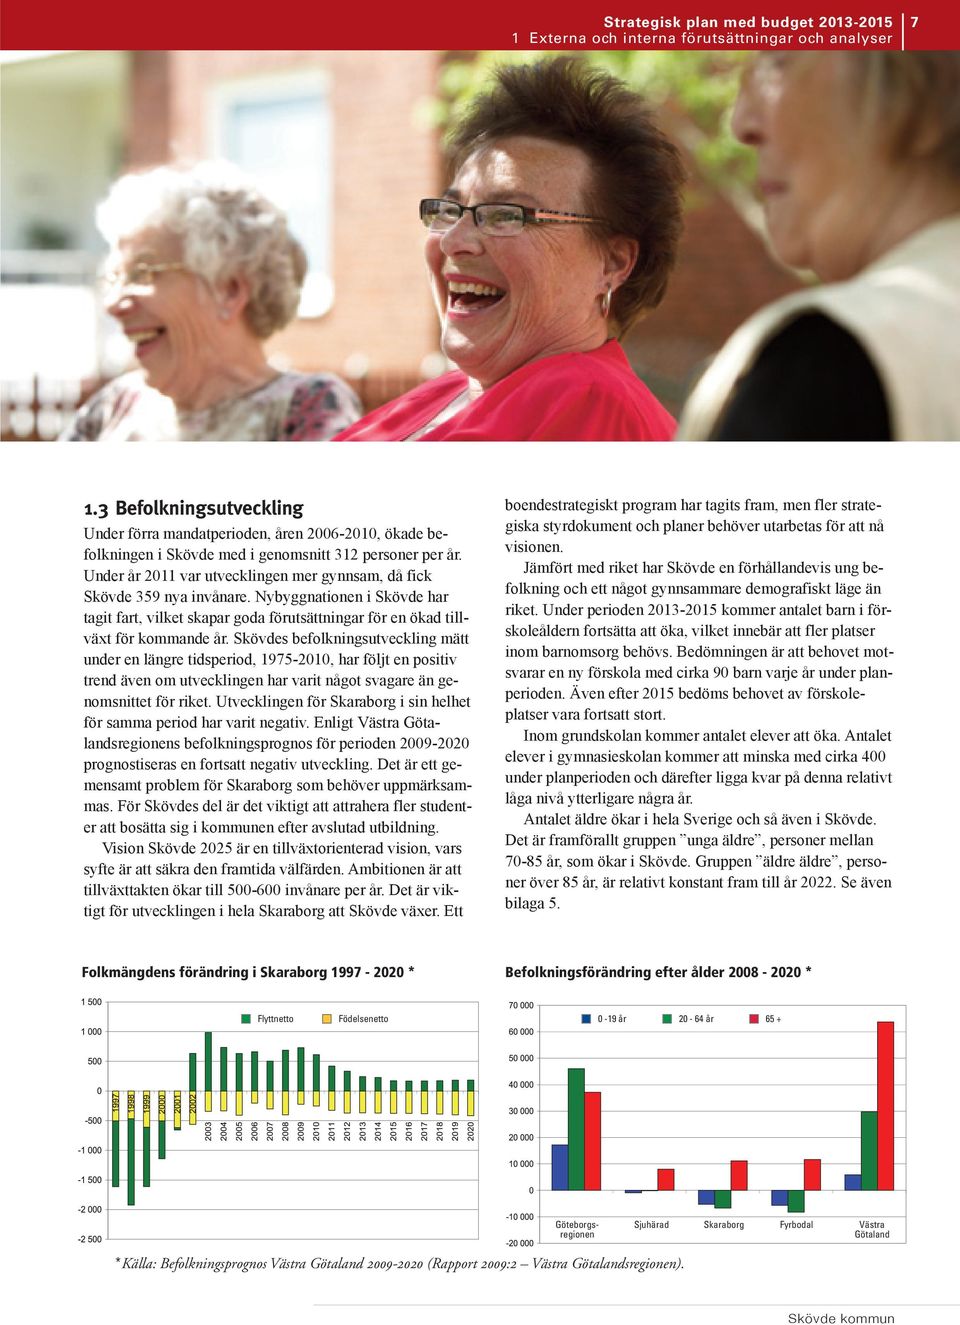 Under år 2011 var utvecklingen mer gynnsam, då fick Skövde 359 nya invånare. Nybyggnationen i Skövde har tagit fart, vilket skapar goda förutsättningar för en ökad tillväxt för kommande år.